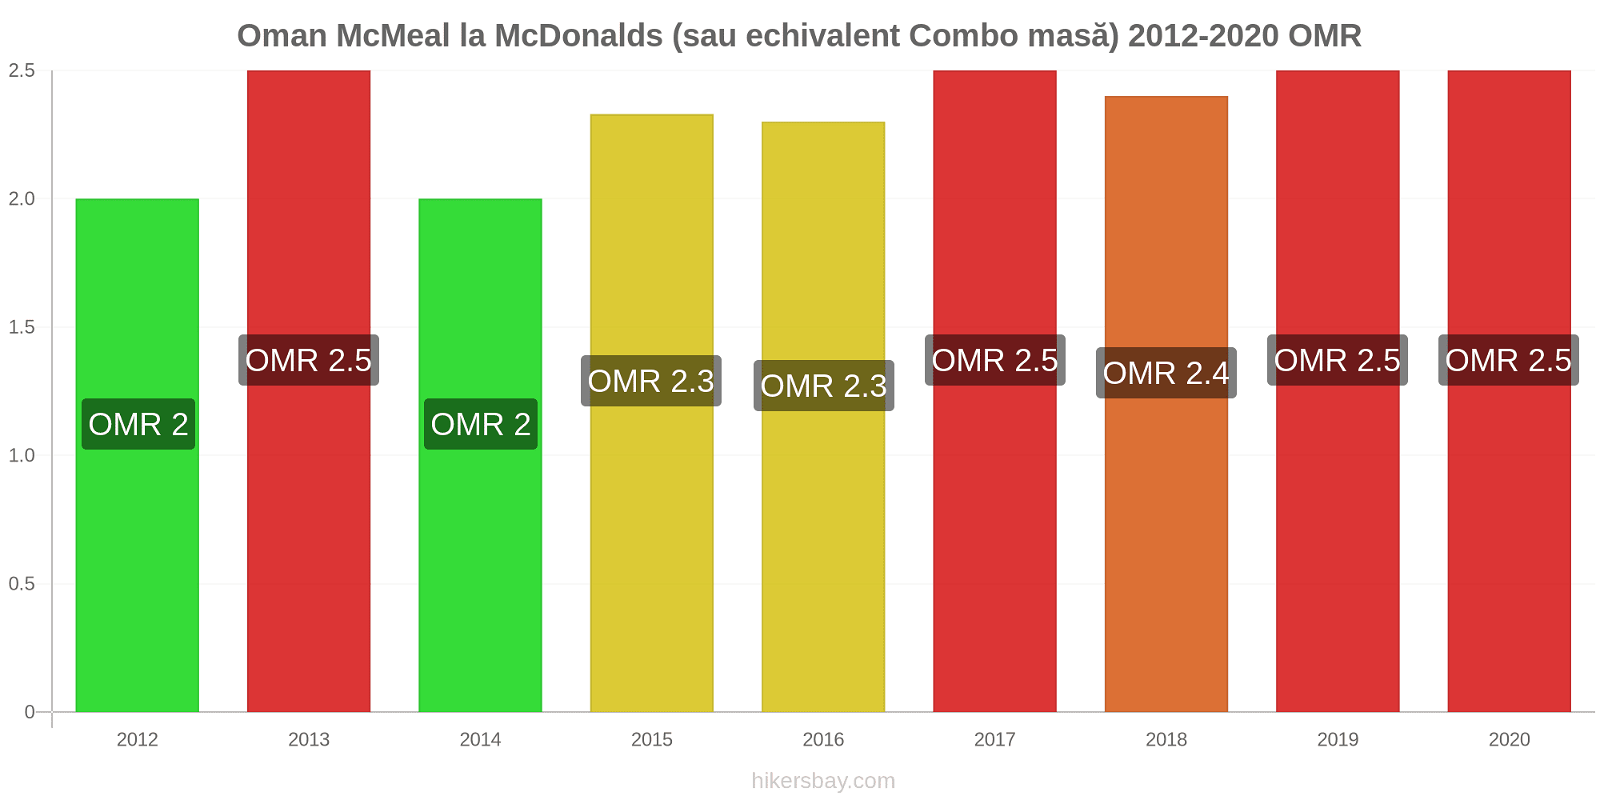 Oman modificări de preț McMeal la McDonalds (sau echivalent Combo masă) hikersbay.com